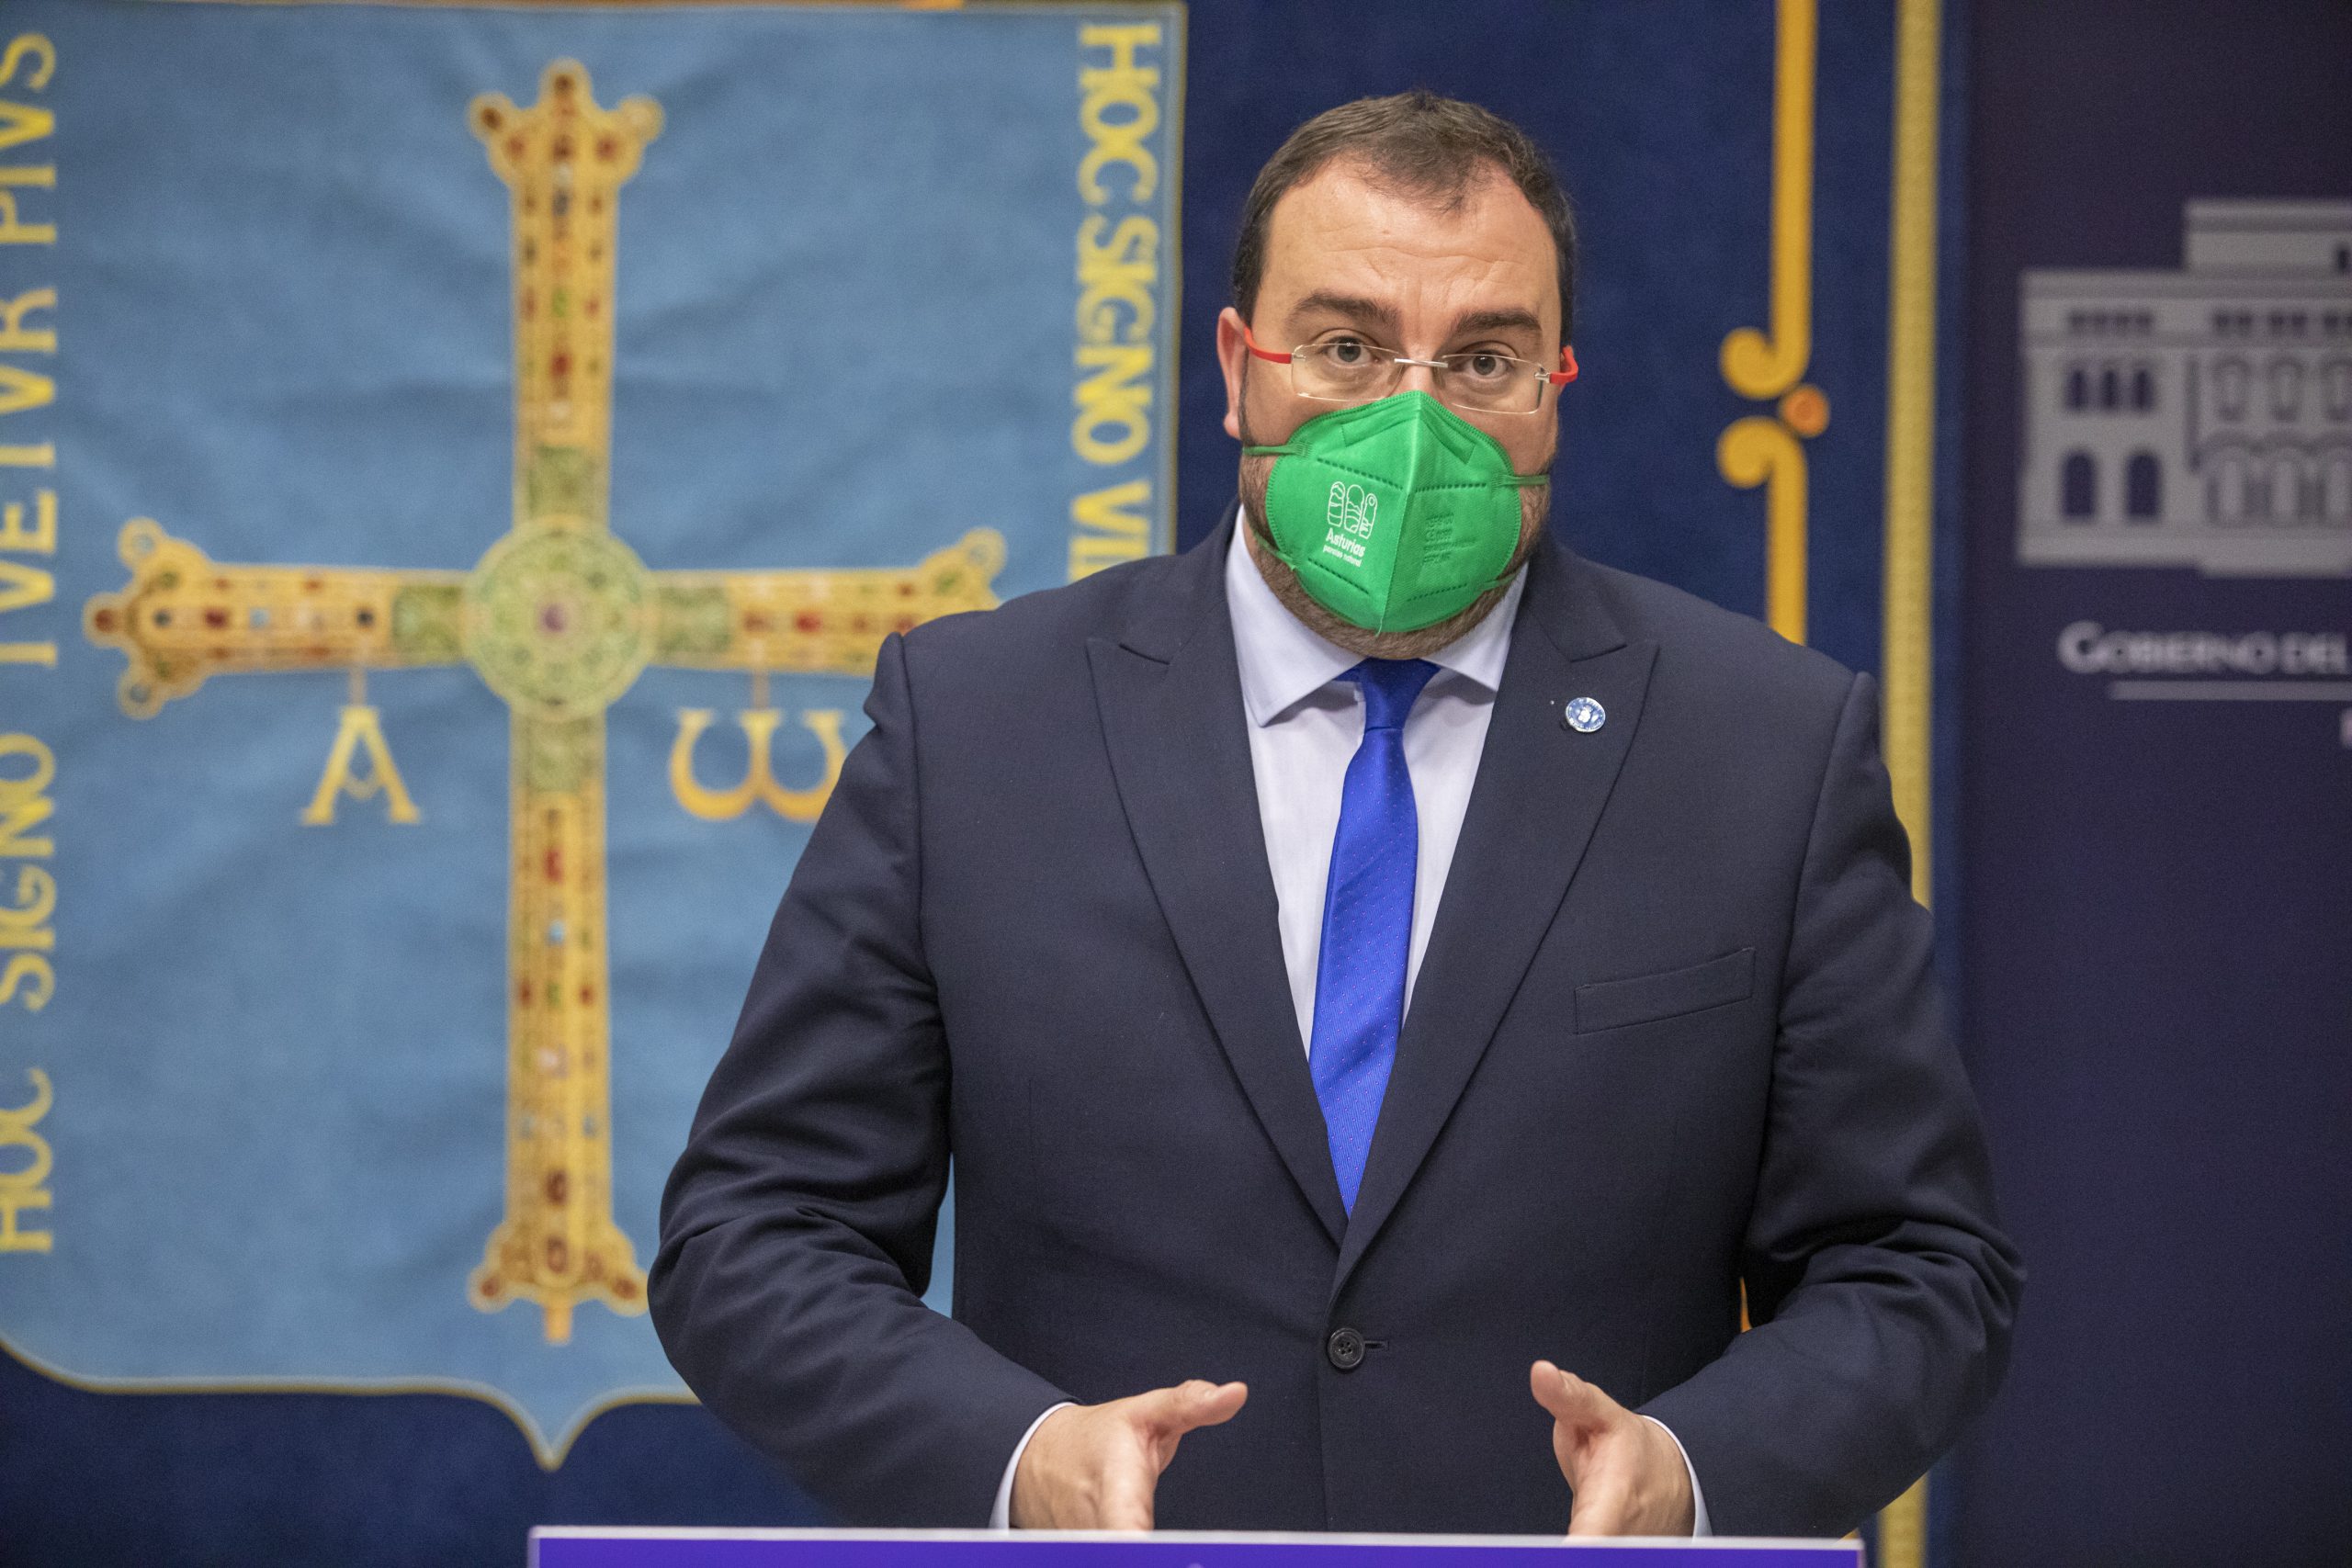 El presidente de Asturias, Adrián Barbón, es ingresado por coronavirus